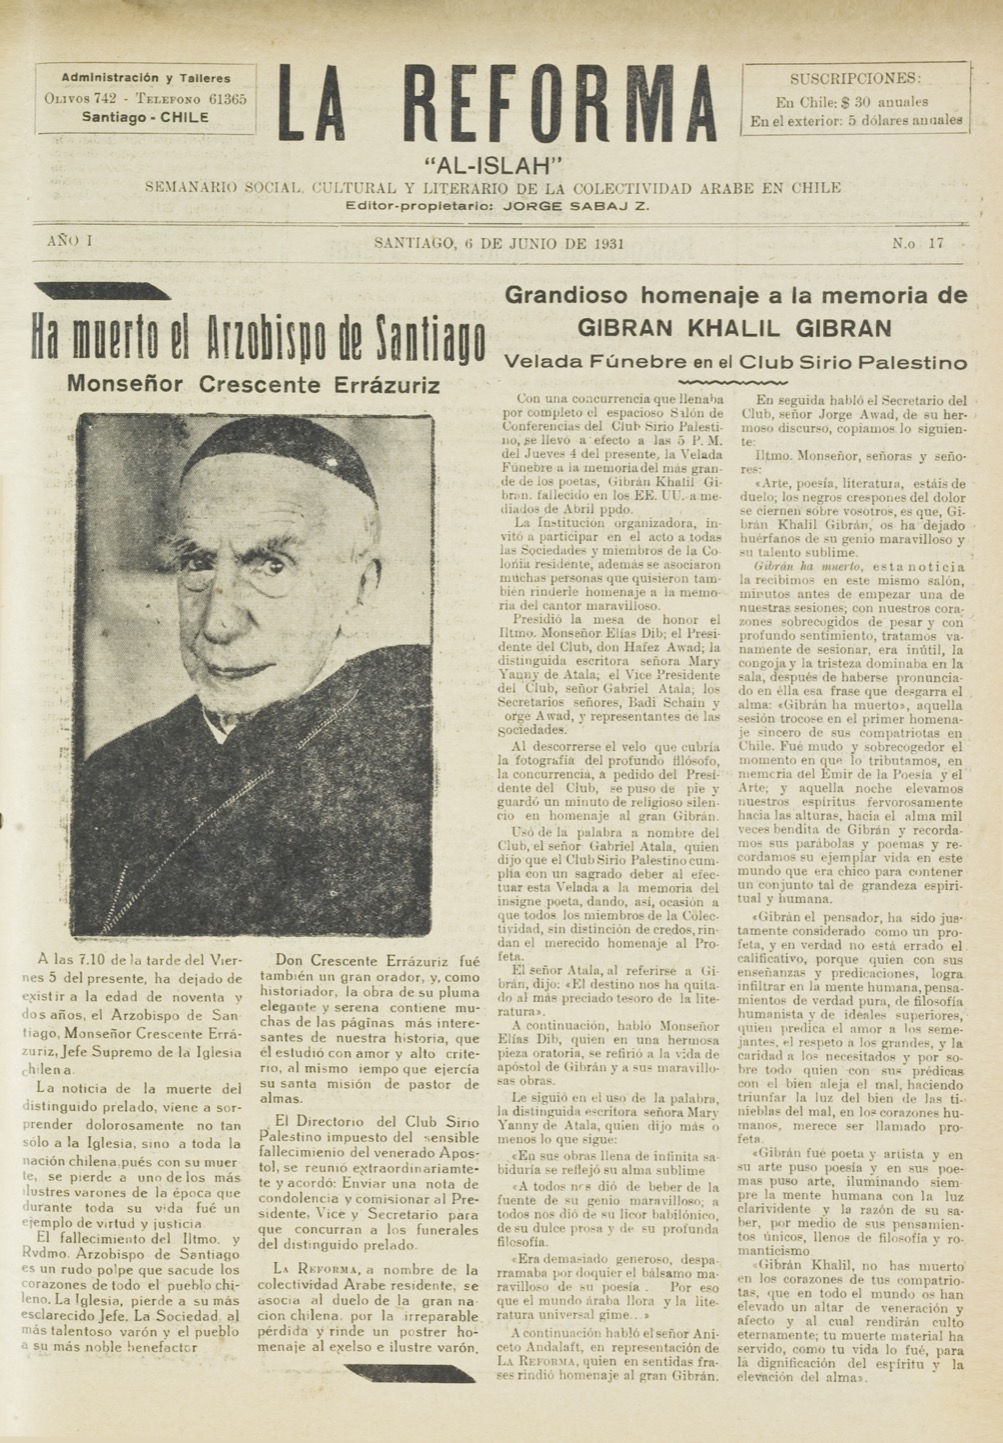 "Grandioso homenaje a la memoria de Gibran Khalil Gibran",La Reforma, Jun 6, 1931, p. 1.